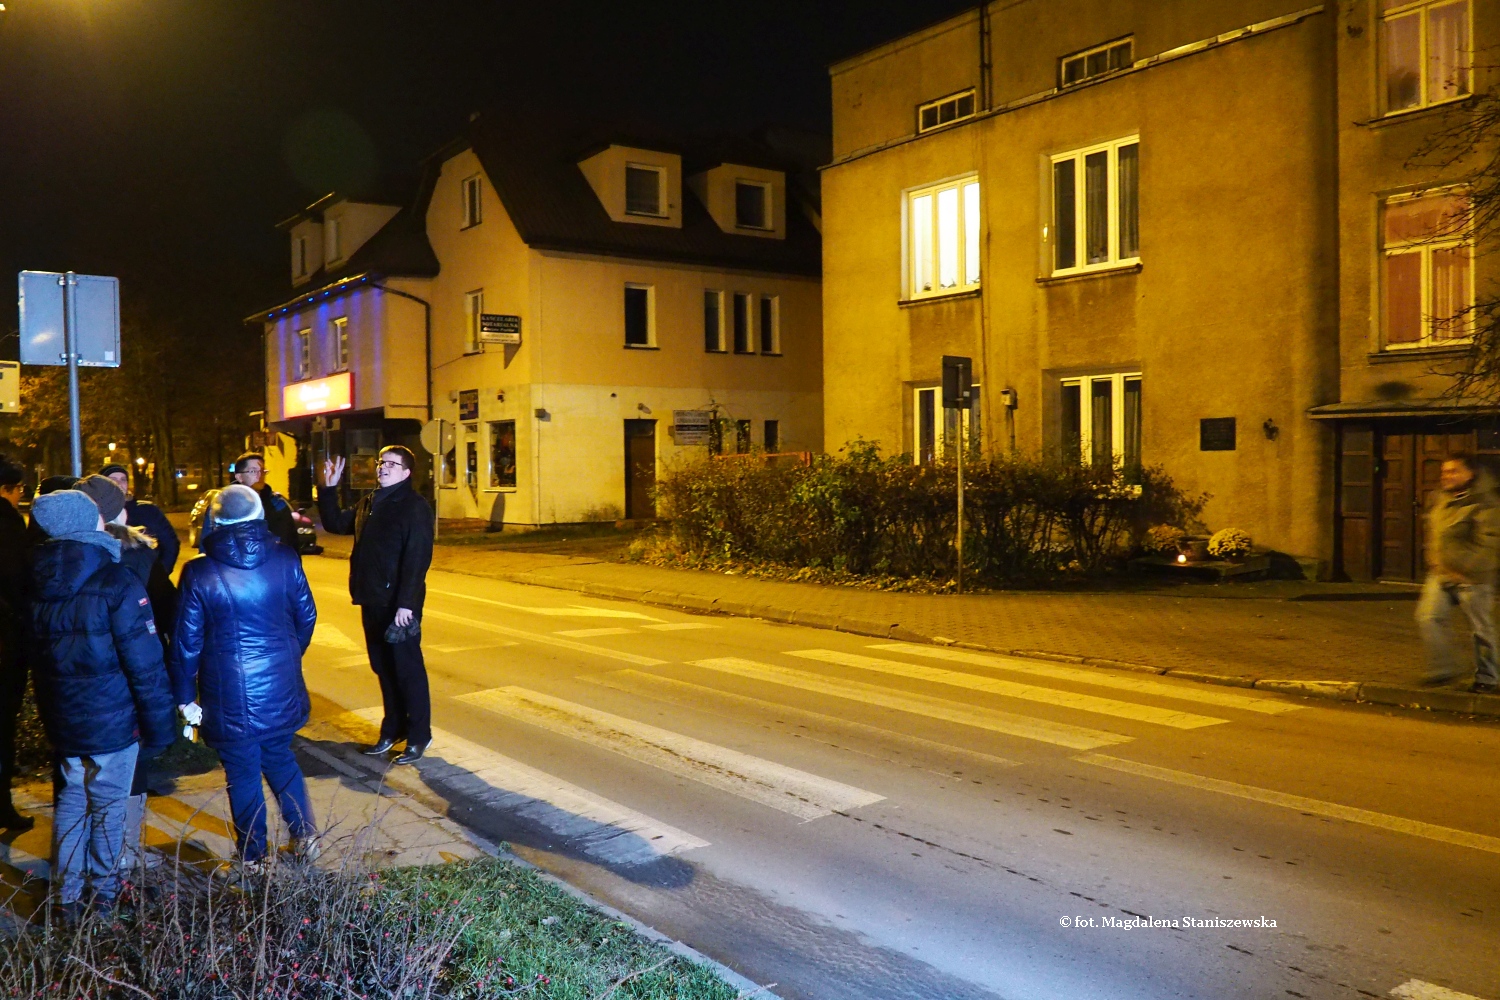 Dom Wenderlichw, w czasie wojny siedziba Gestapo, miejsce mordu okoo 300 osb, 18.11.2016 r.